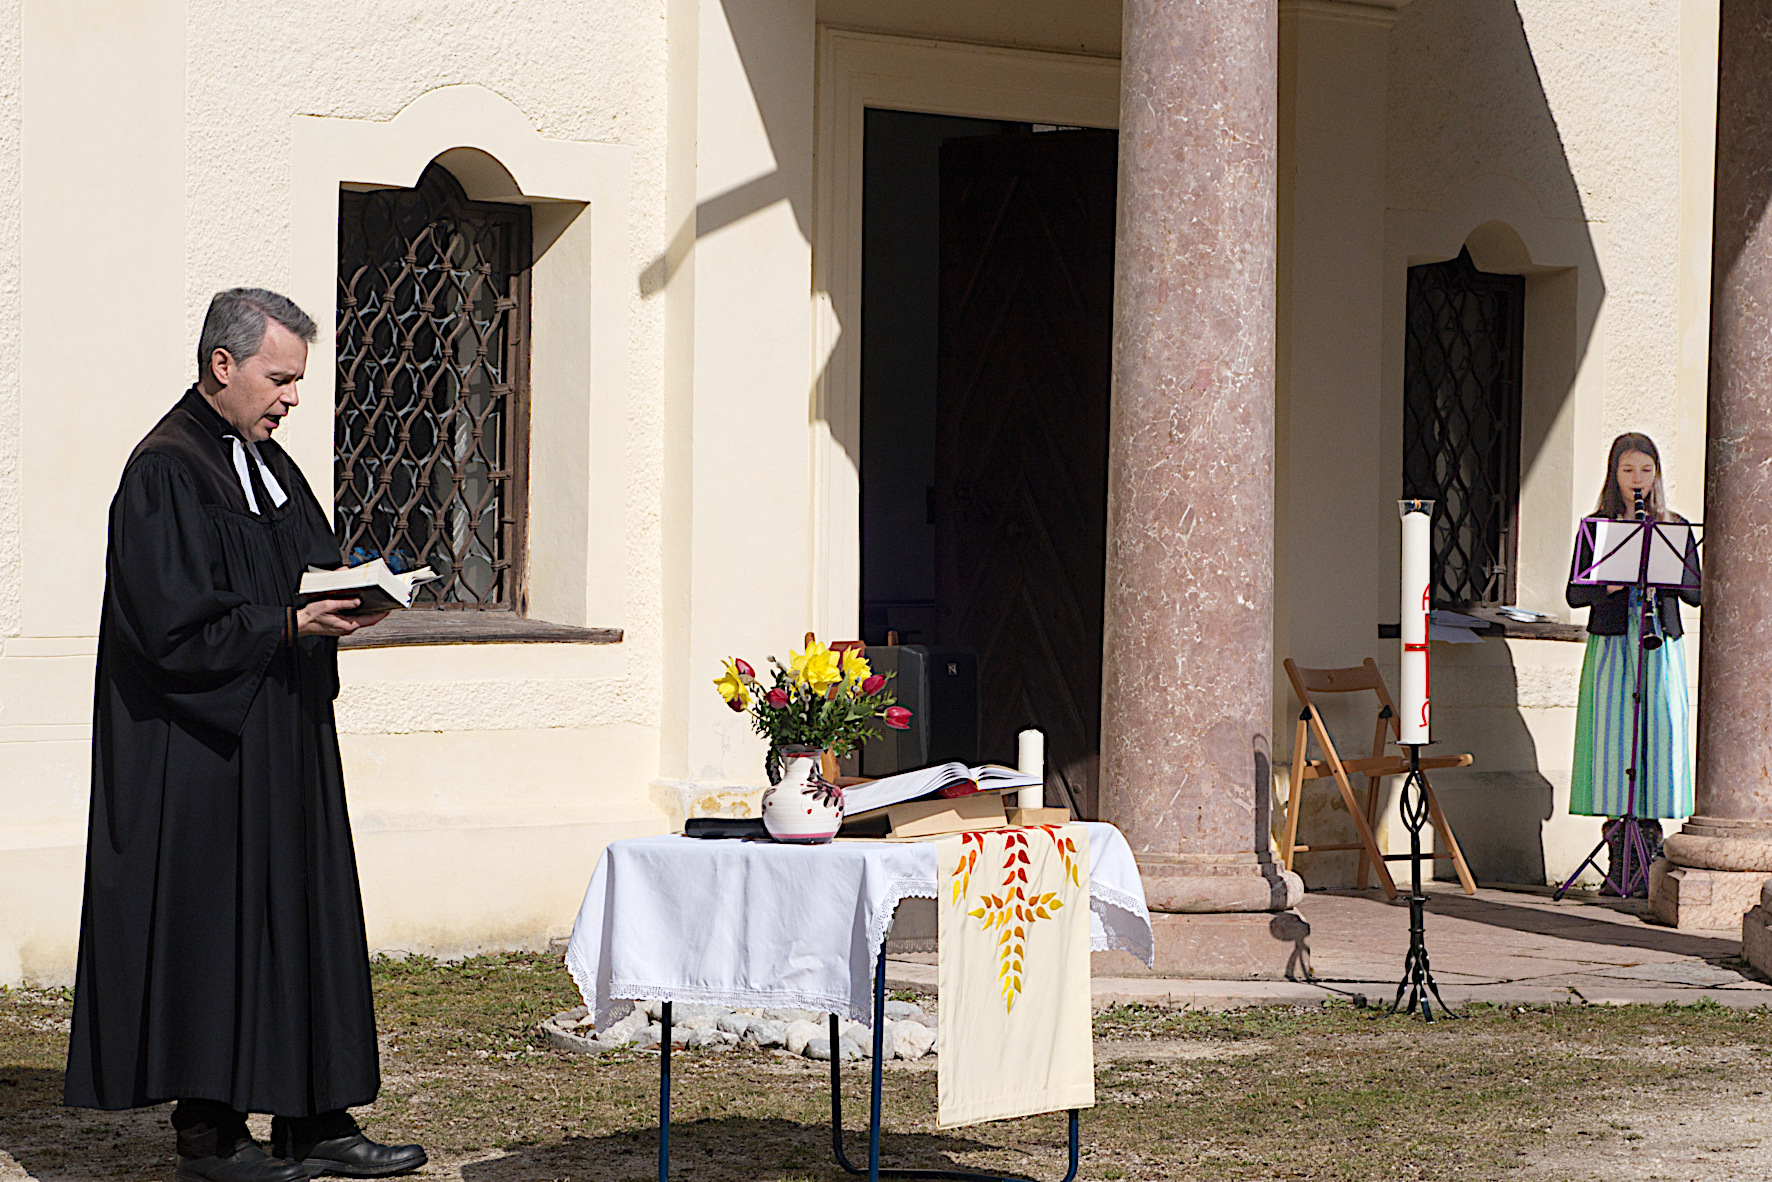 Der Gesang von Pfarrer Christian Gerstner wird von Teresa Biller mit ihrer Klarinette begleitet.